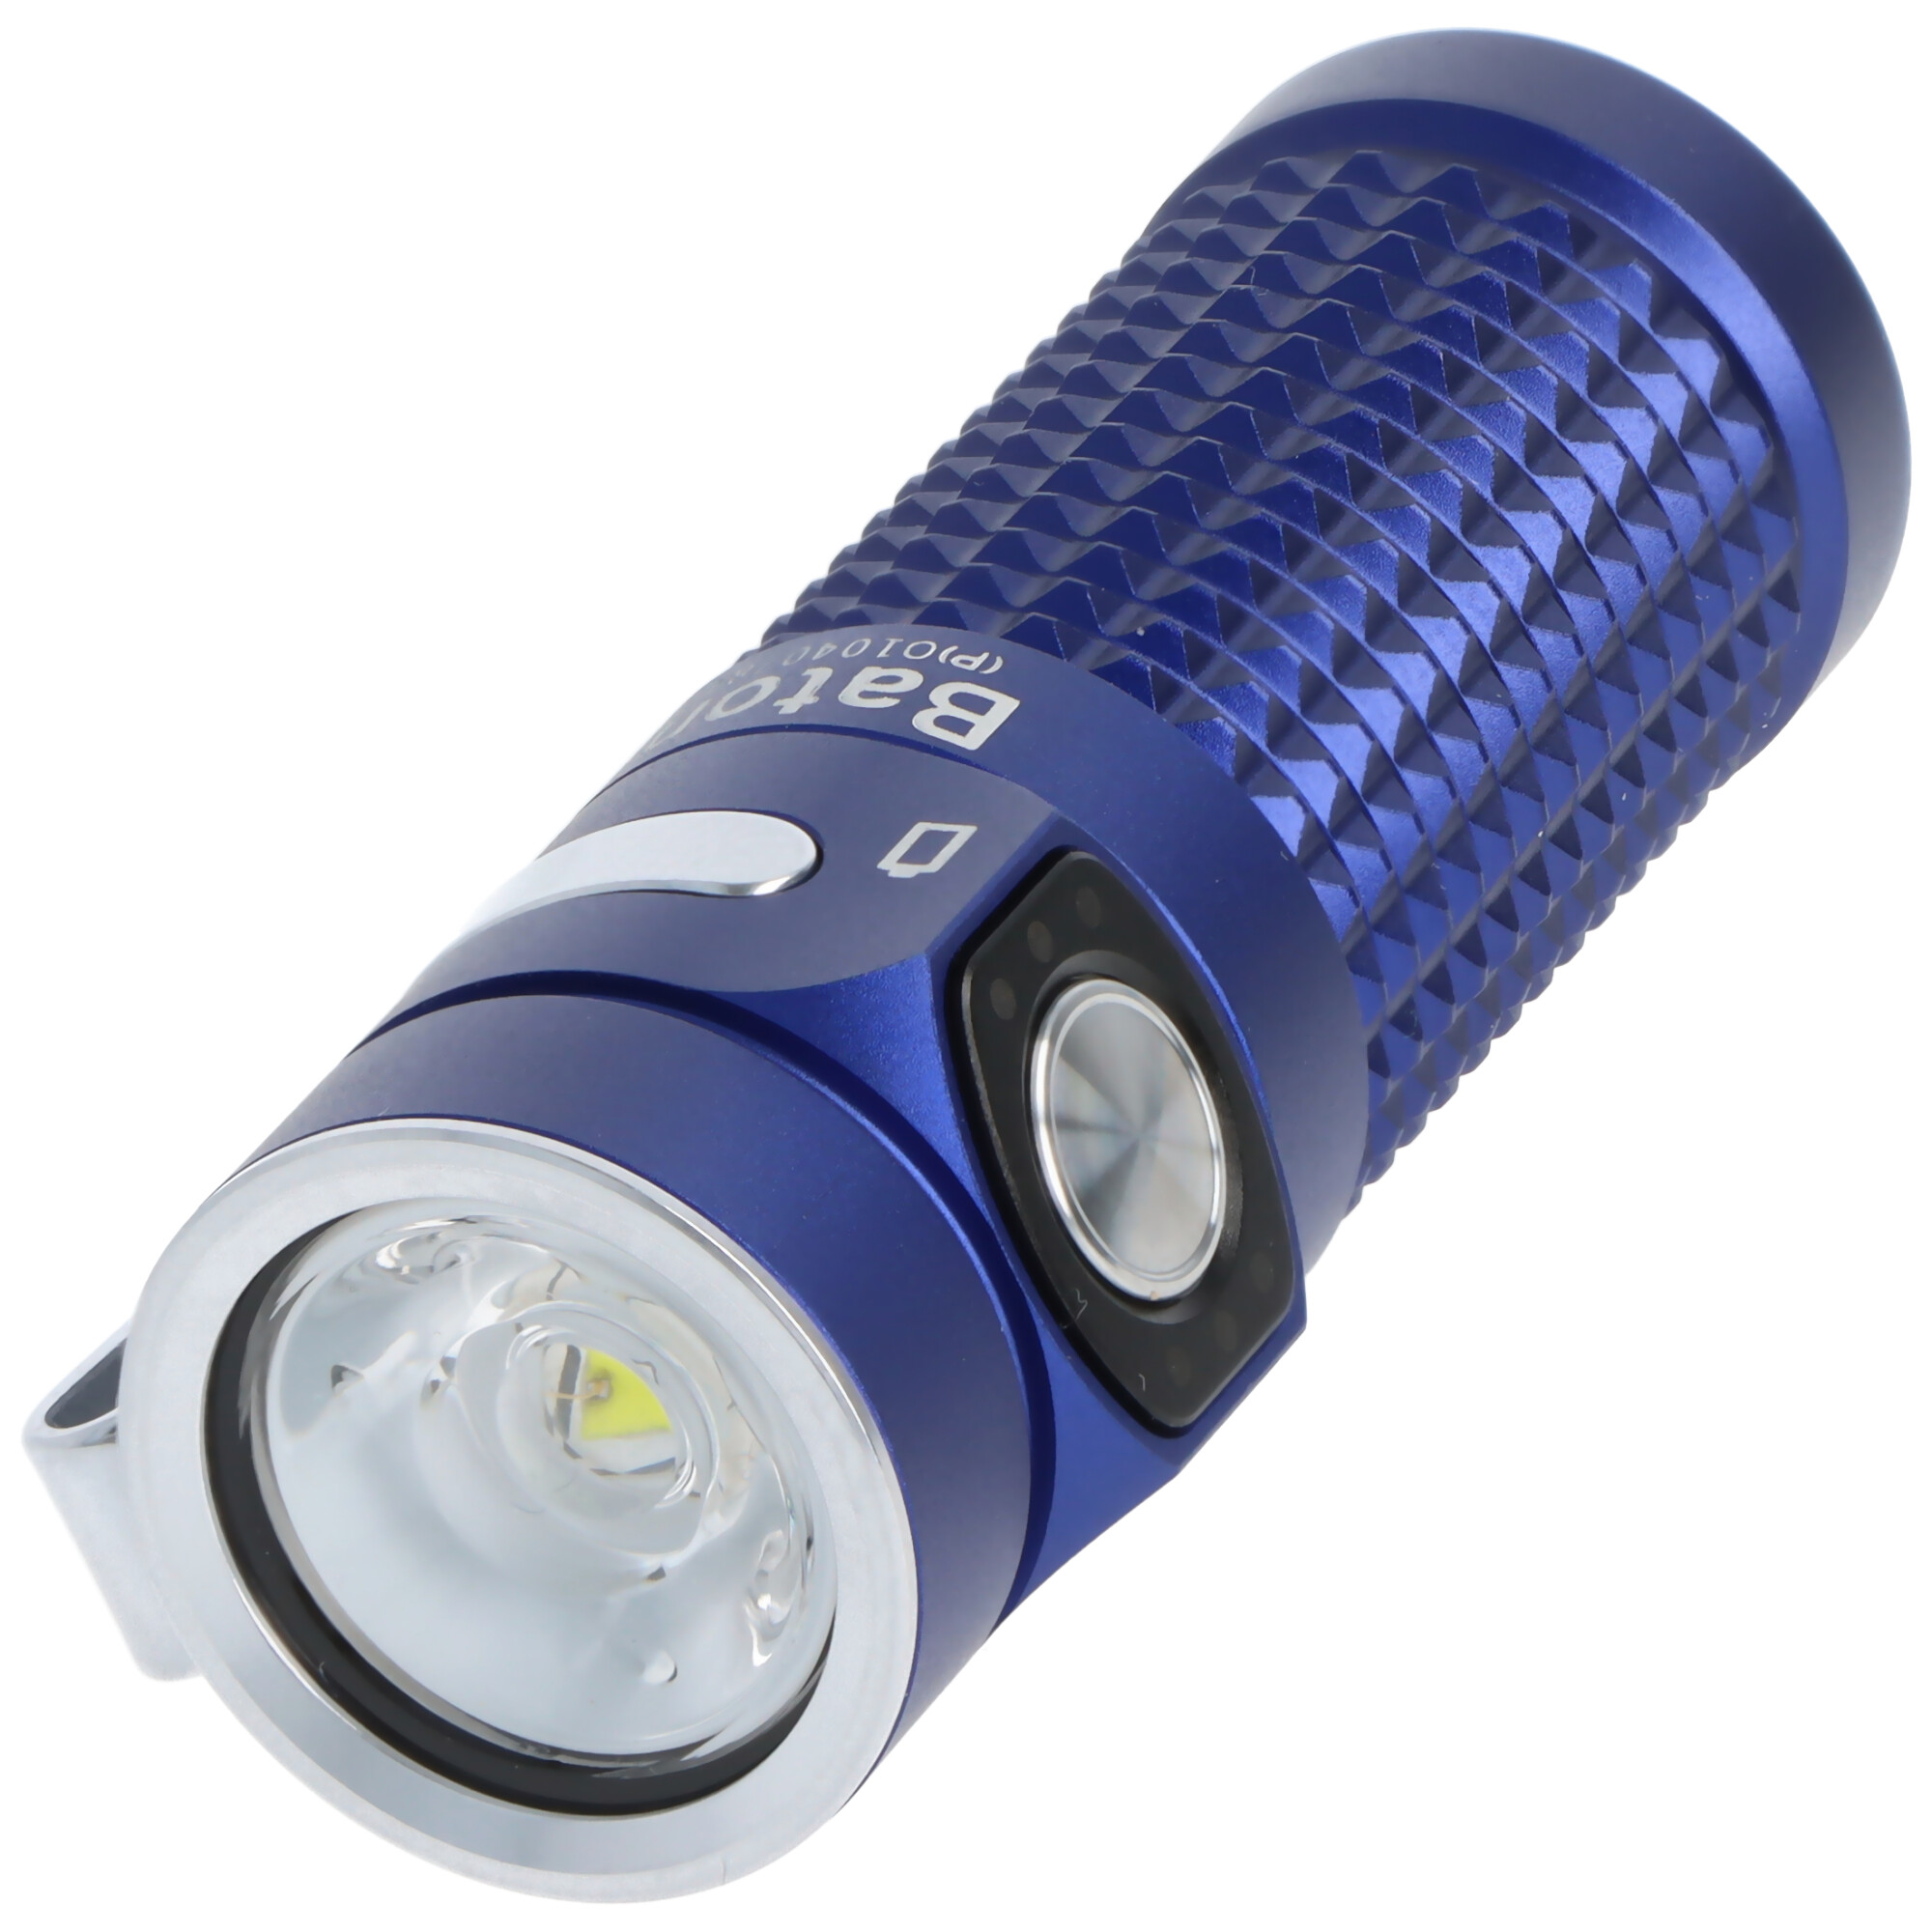 Olight Baton 4 Premium Edition königsblau, LED-Taschenlampe mit Ladecase, ultra-kompakt und leistungsstark, 1300 Lumen